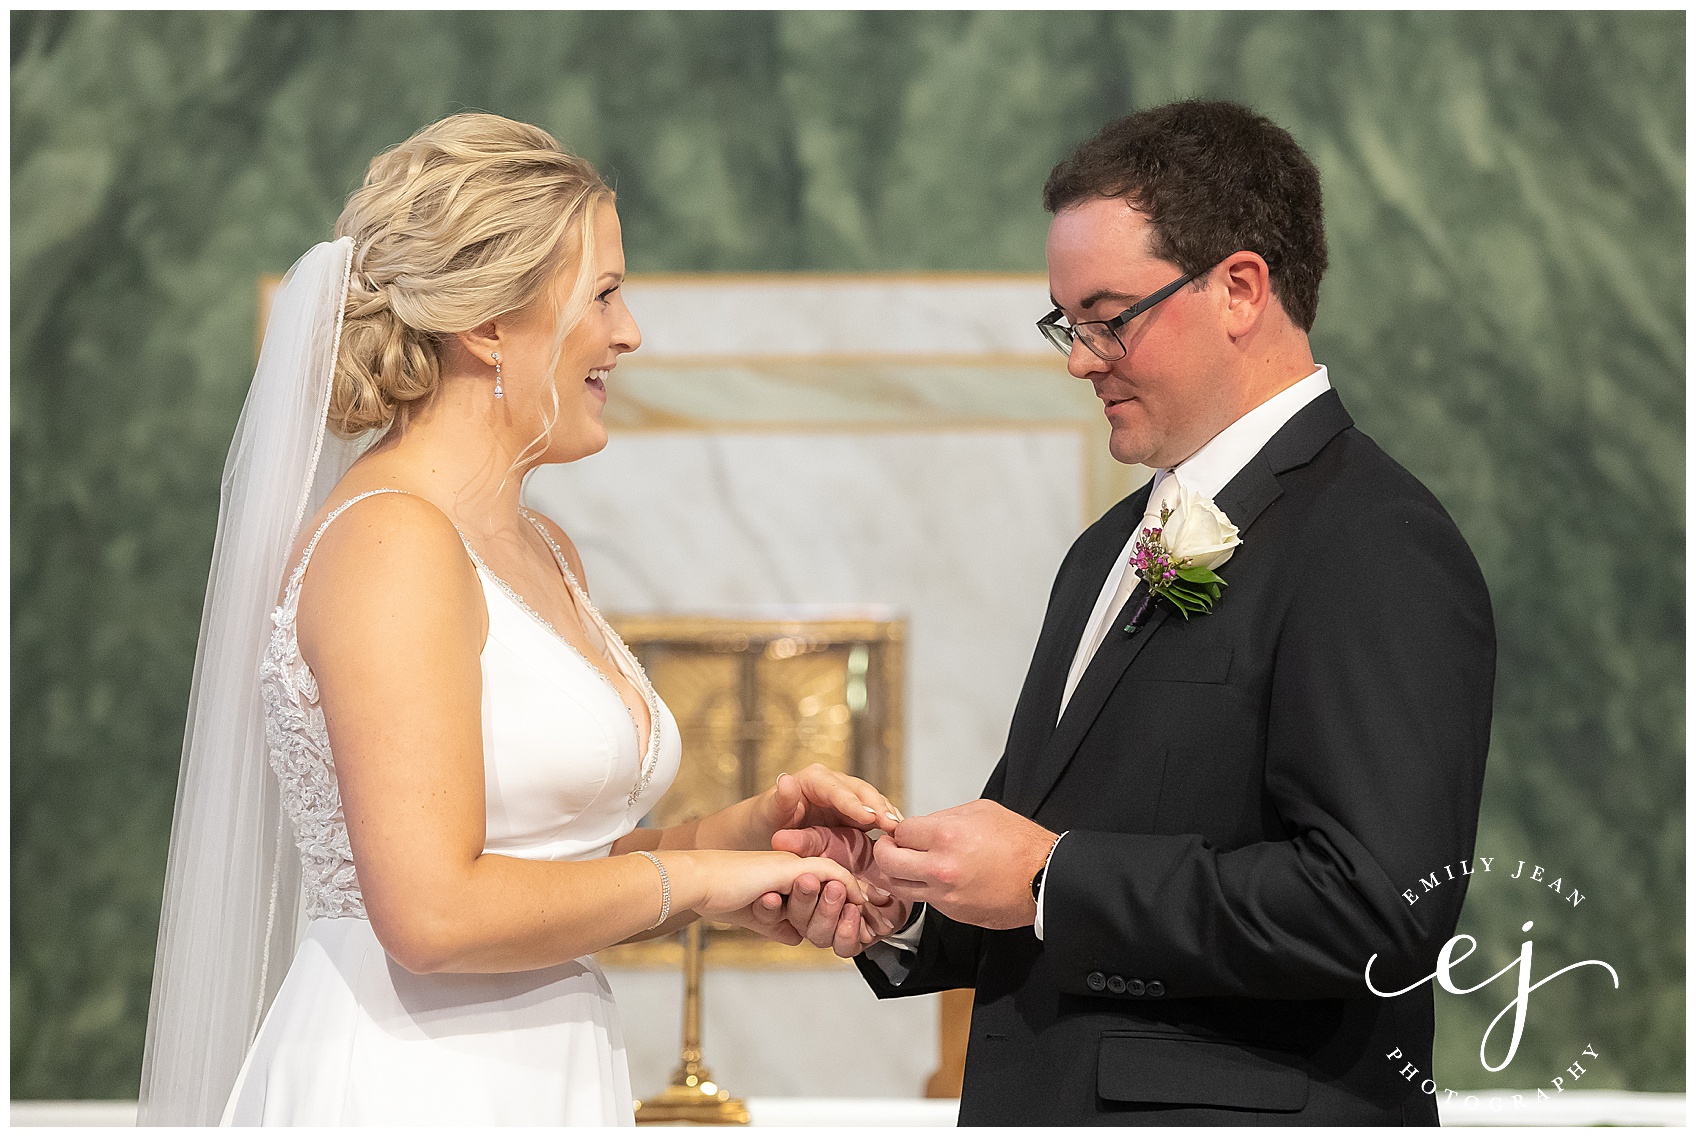 exchanging rings catholic ceremony wedding 